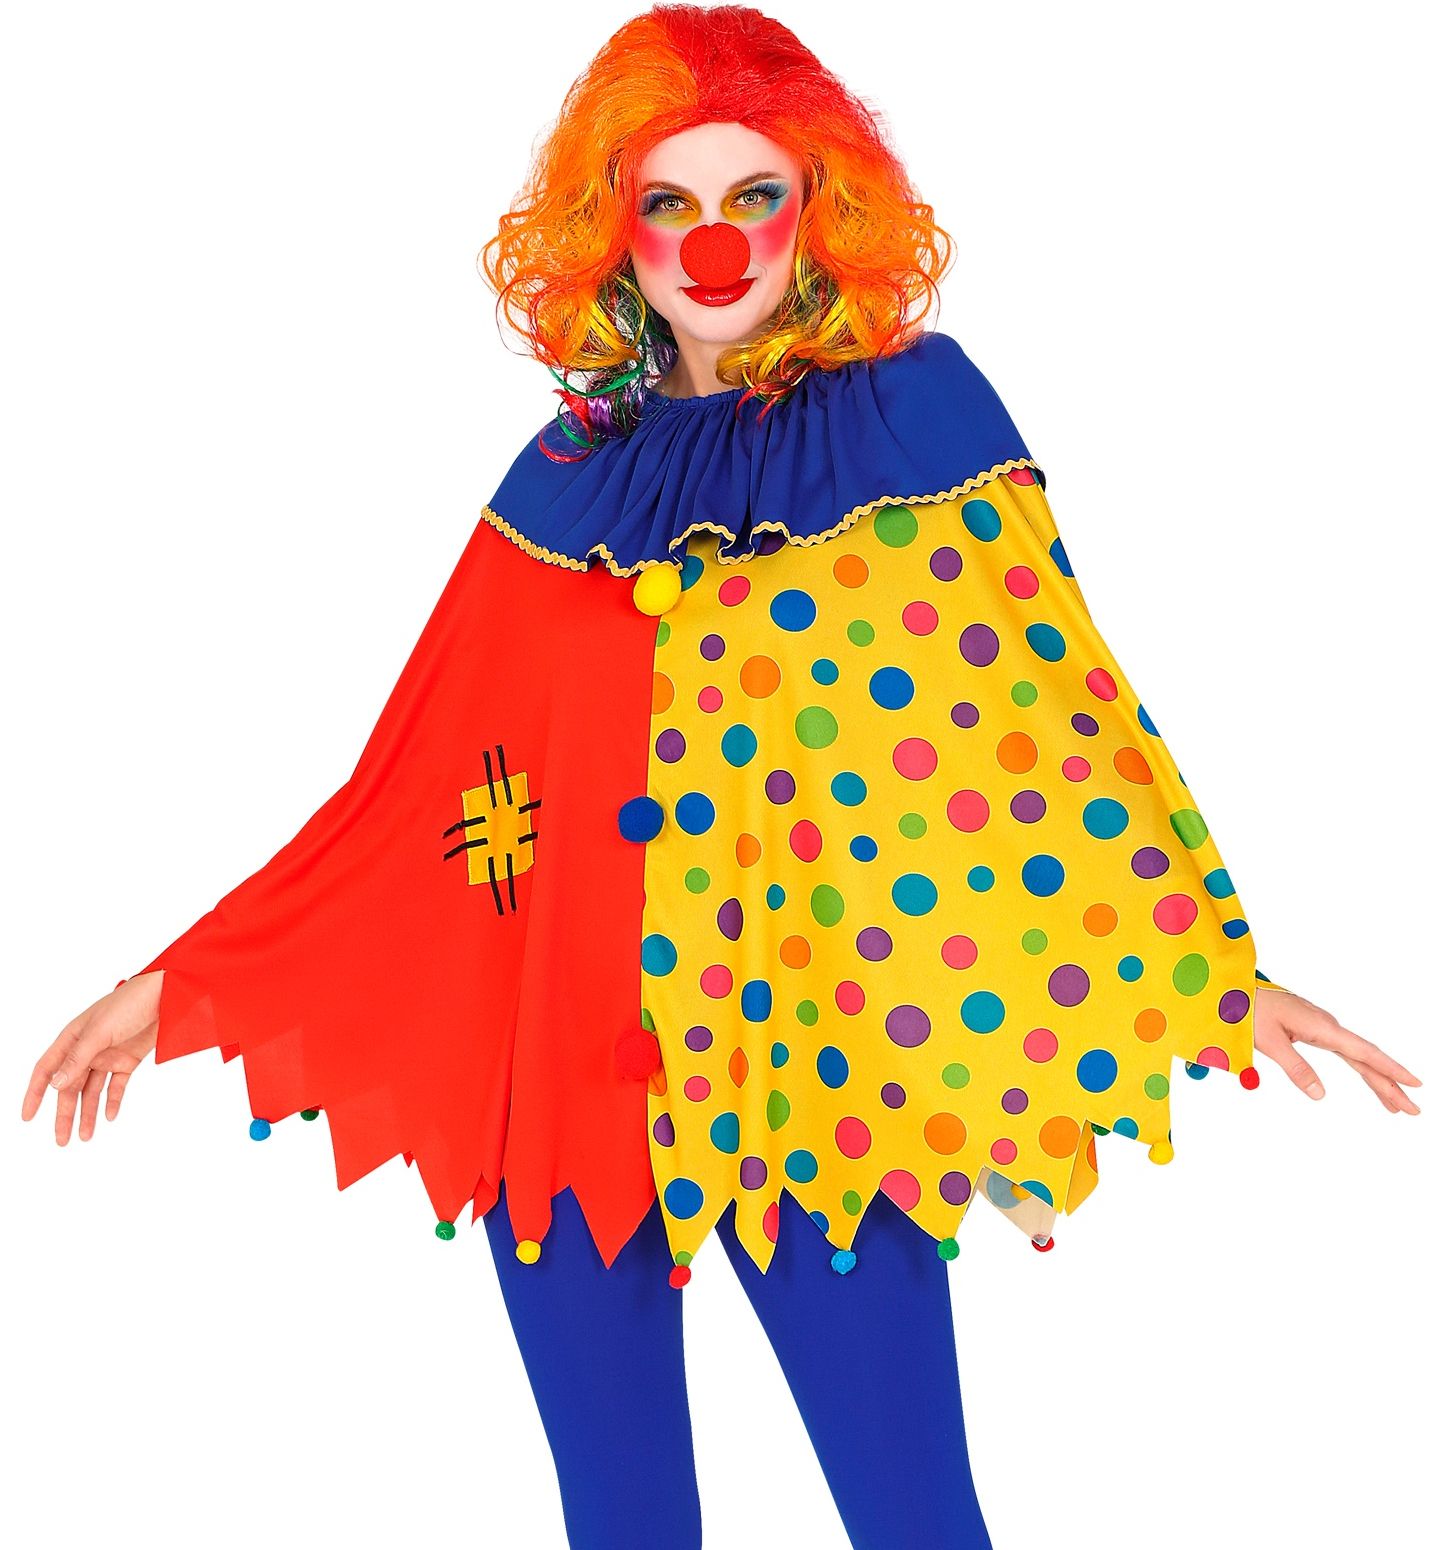 Poncho clown